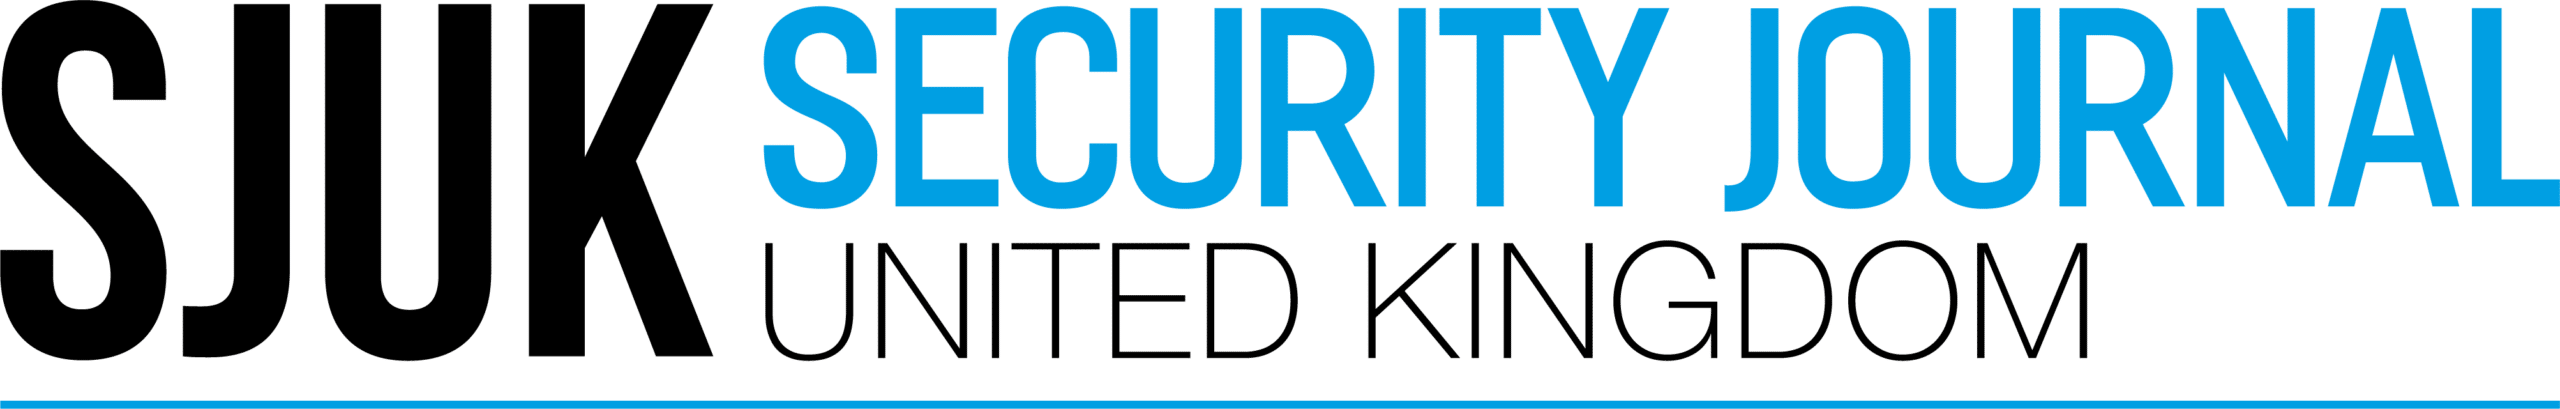 Security Journal UK